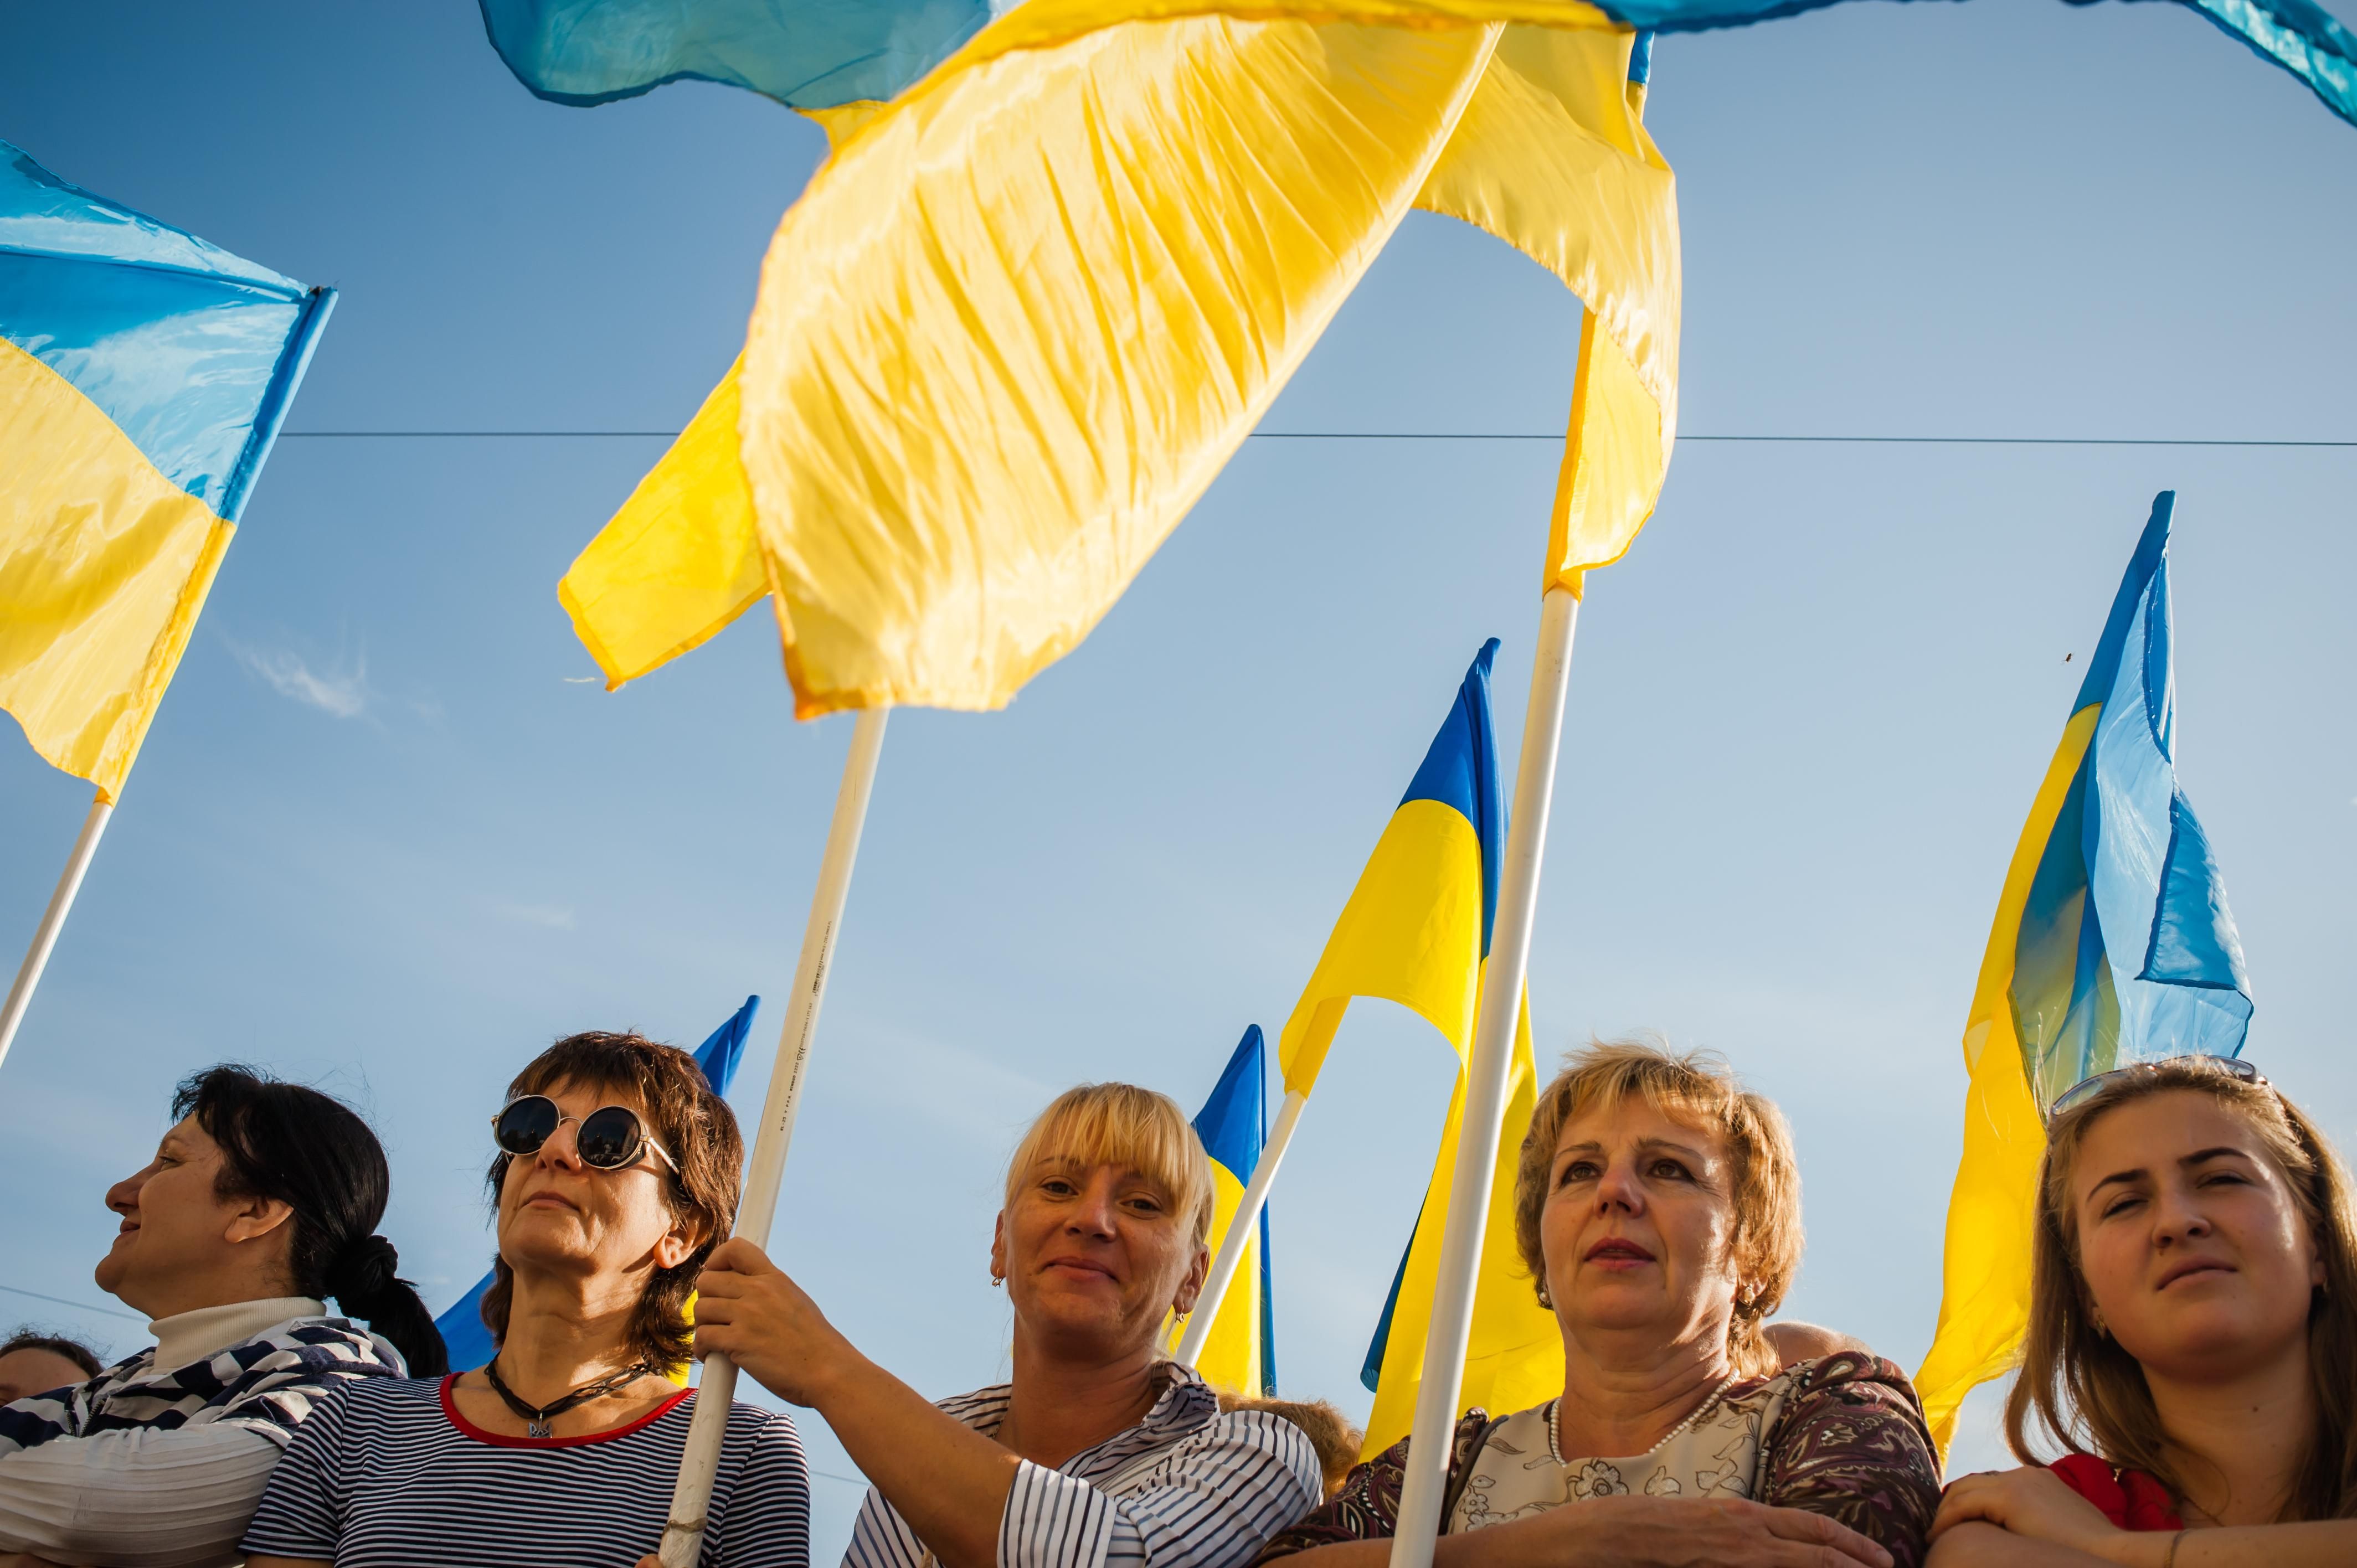 Сколько украинцев за предоставление русскому статуса второго государственного: новые данные